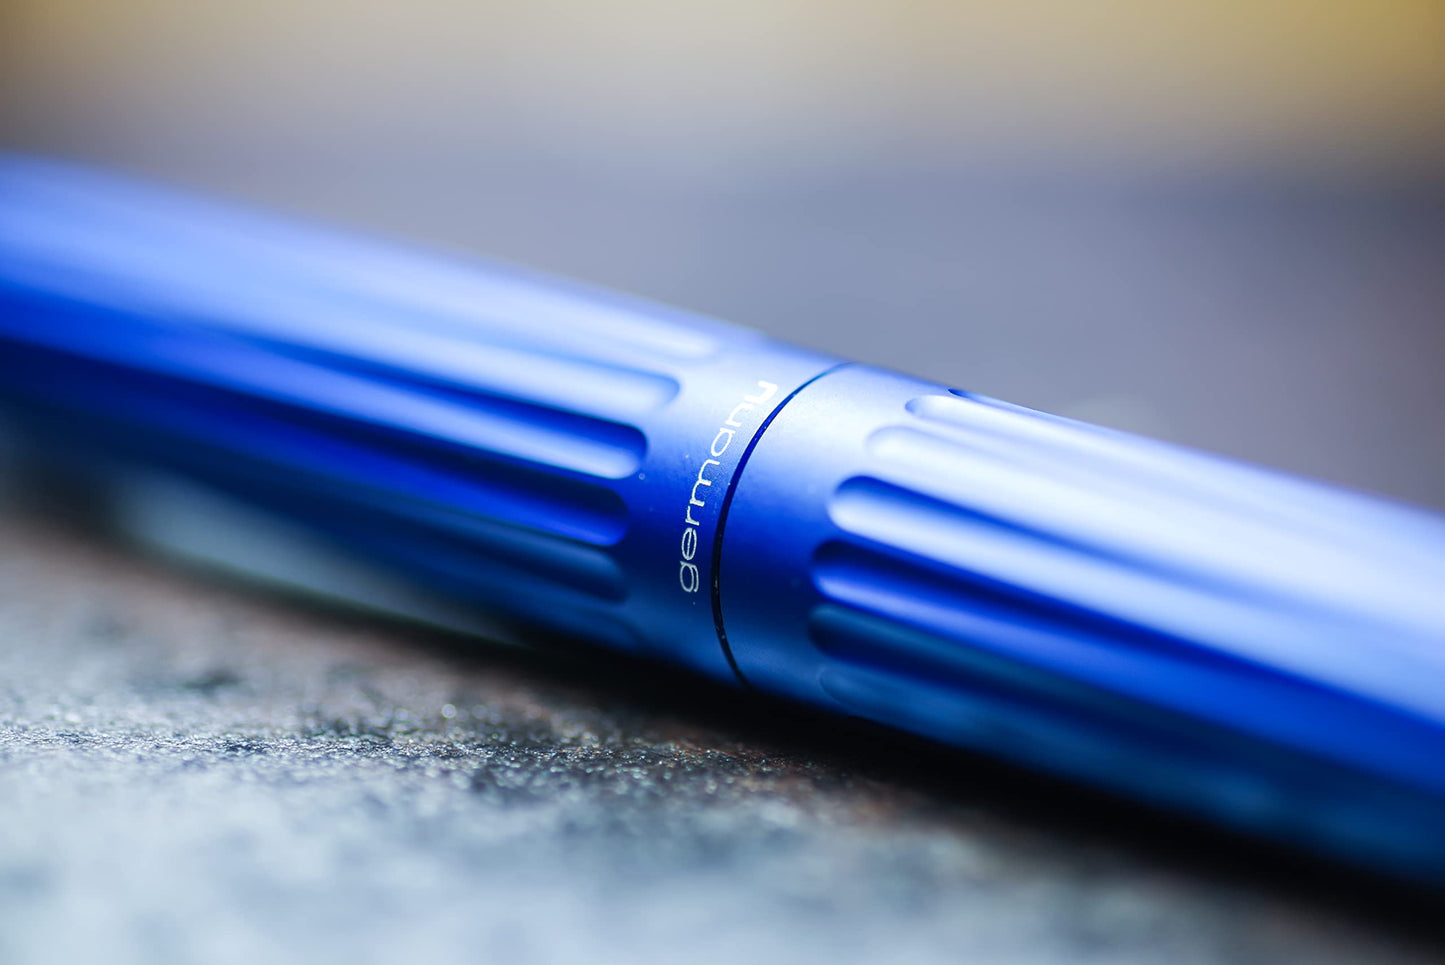 Diplomat Aero Blue Rollerball Pen